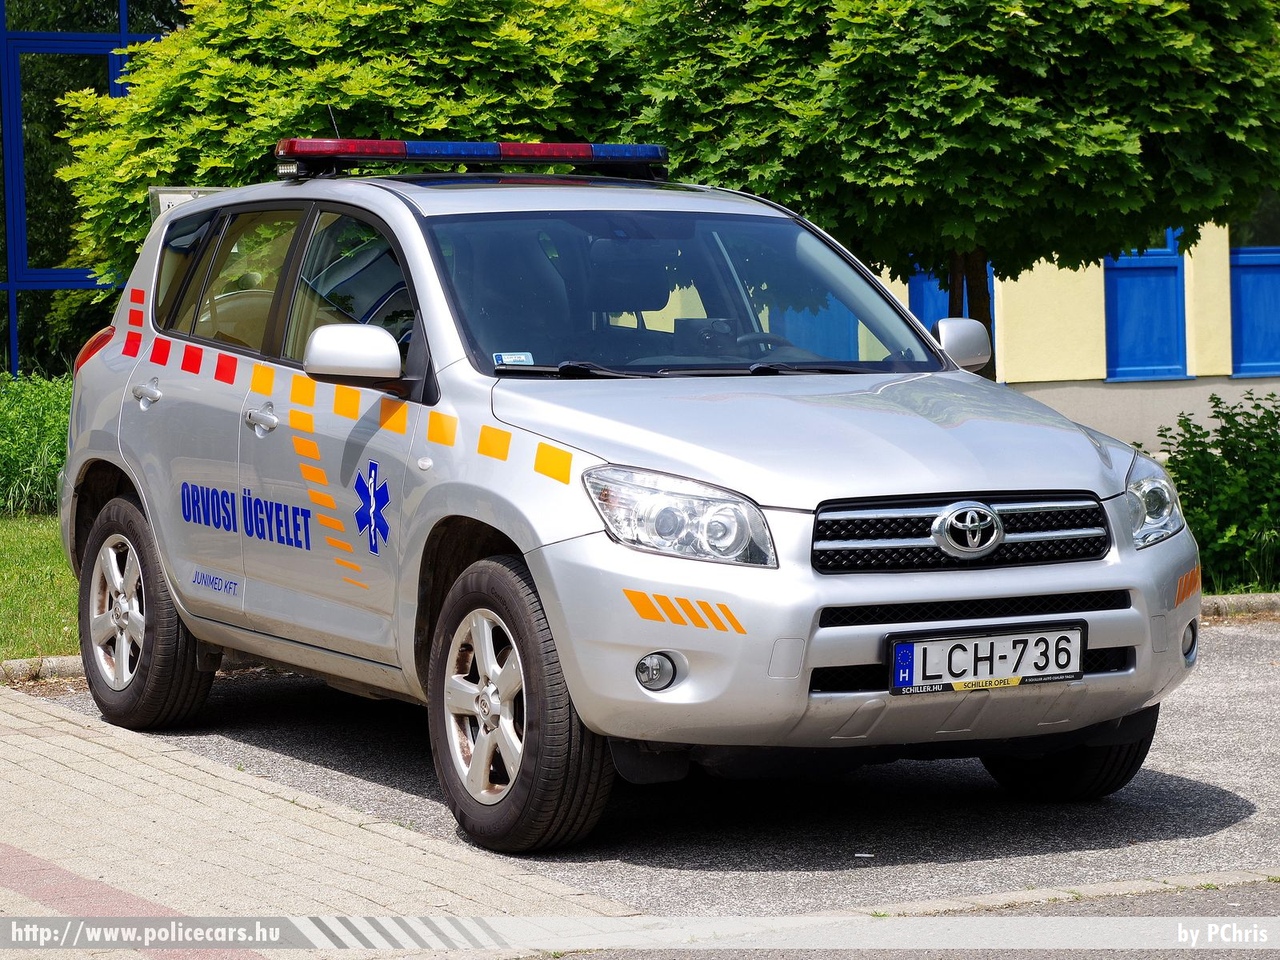 Toyota RAV4, orvosi ügyelet, Rétság, Junimed Kft., fotó: PChris
Keywords: mentő magyar Magyarország mentőautó ambulance Hungary hungarian LCH-736